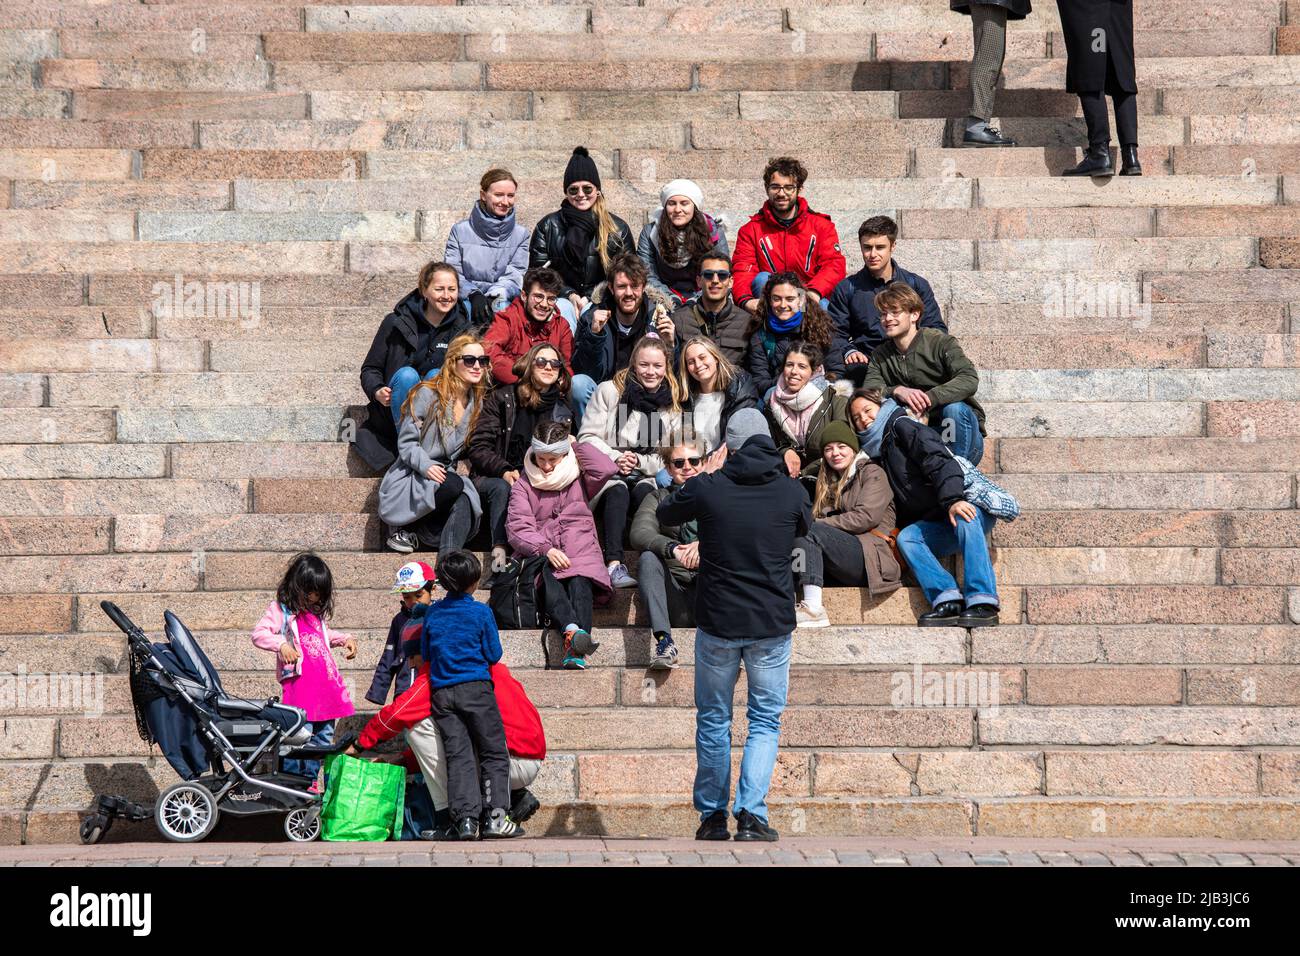 Grupo de jóvenes posando para una foto en Helsinki Cathedral Steps en Helsinki, Finlandia Foto de stock